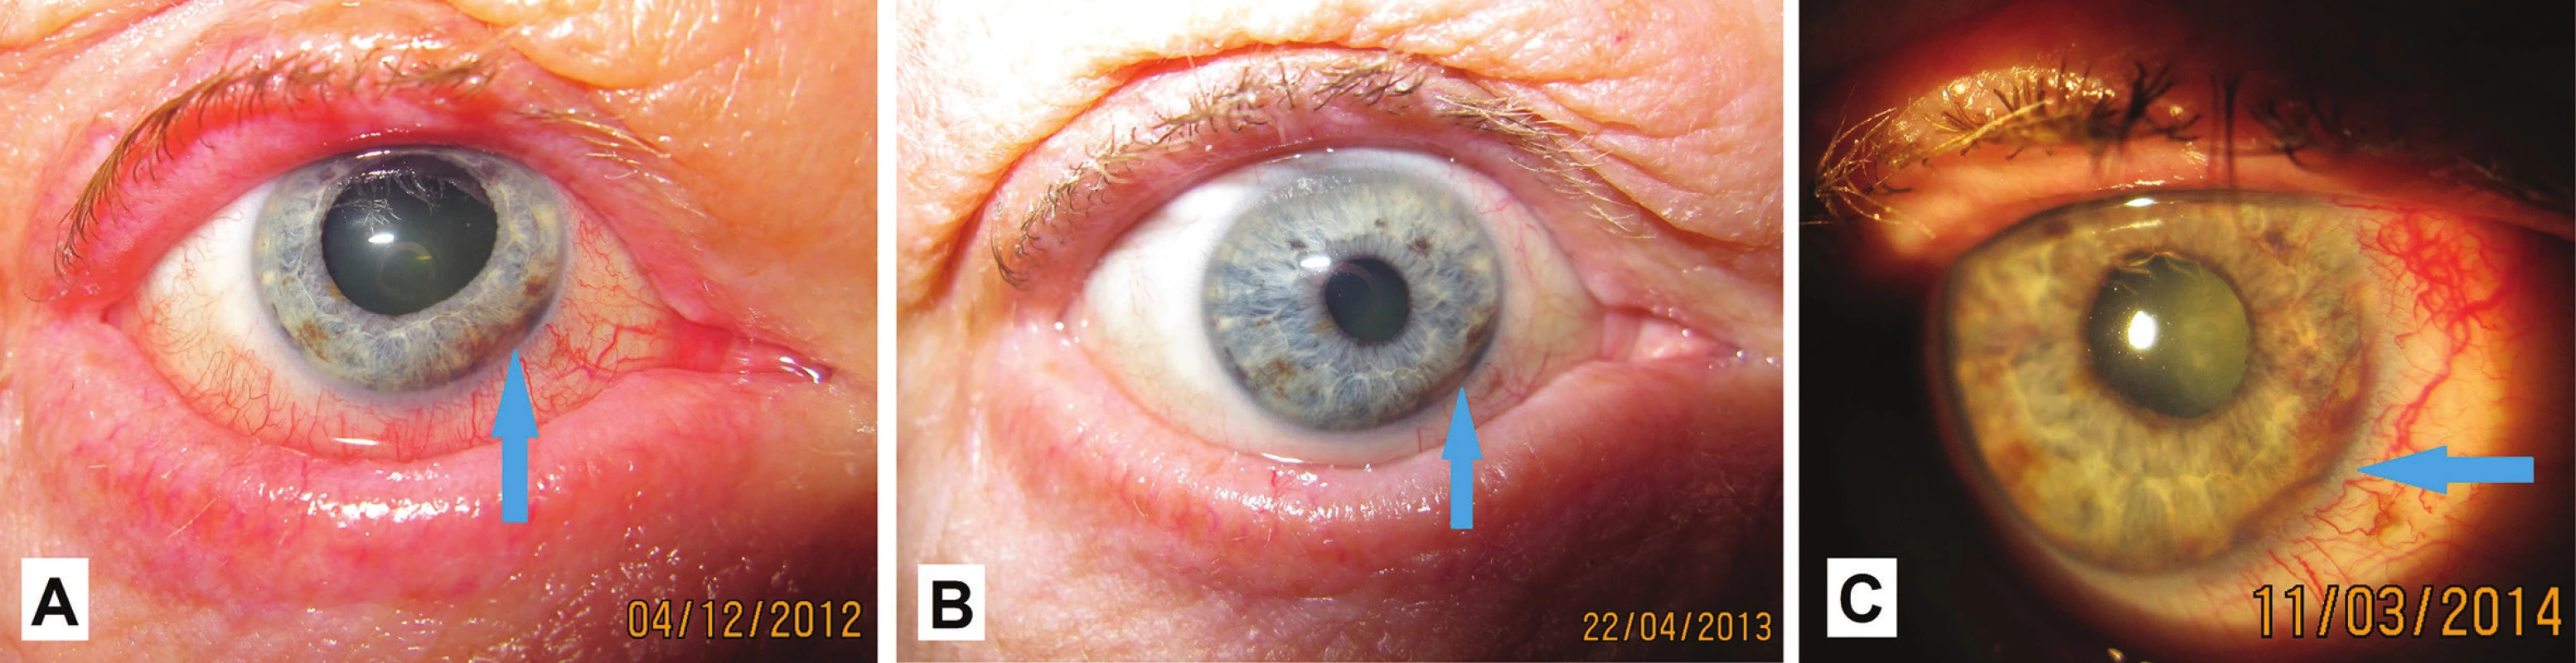 Makrofoto predného segmentu oka u pacienta v r. 2012 (A), v r. 2013 (B) a v r. 2014 (C)